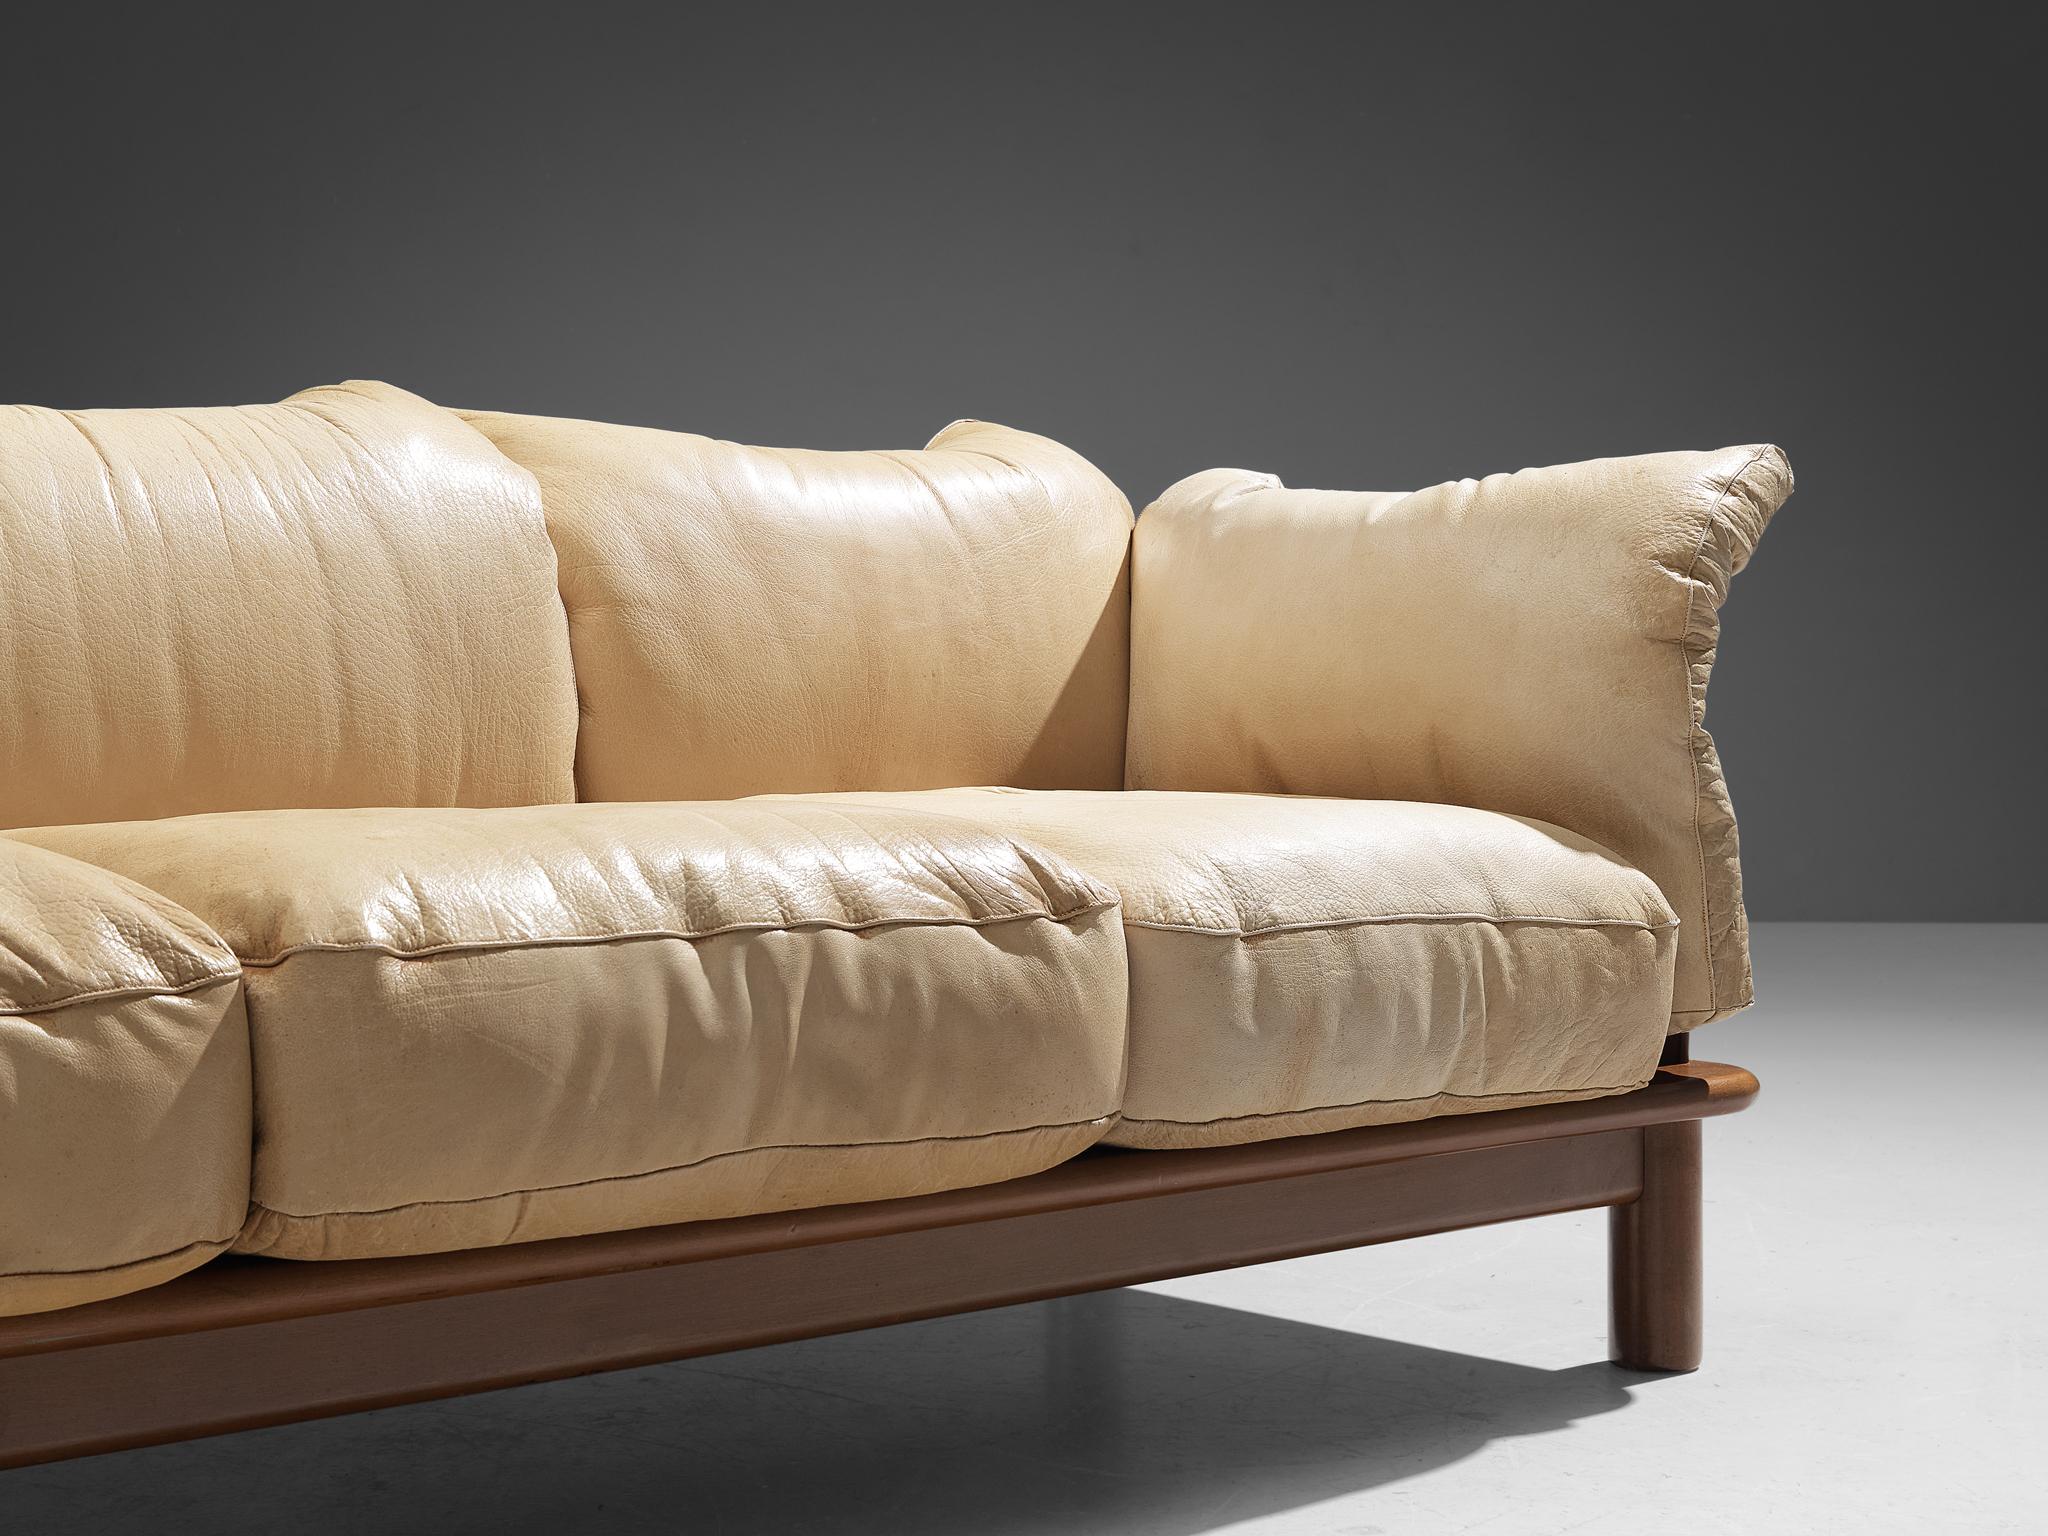 De Pas, D’Urbino & Lomazzi for Poltronova 'PITTI' Sofa in Beige Leather 1